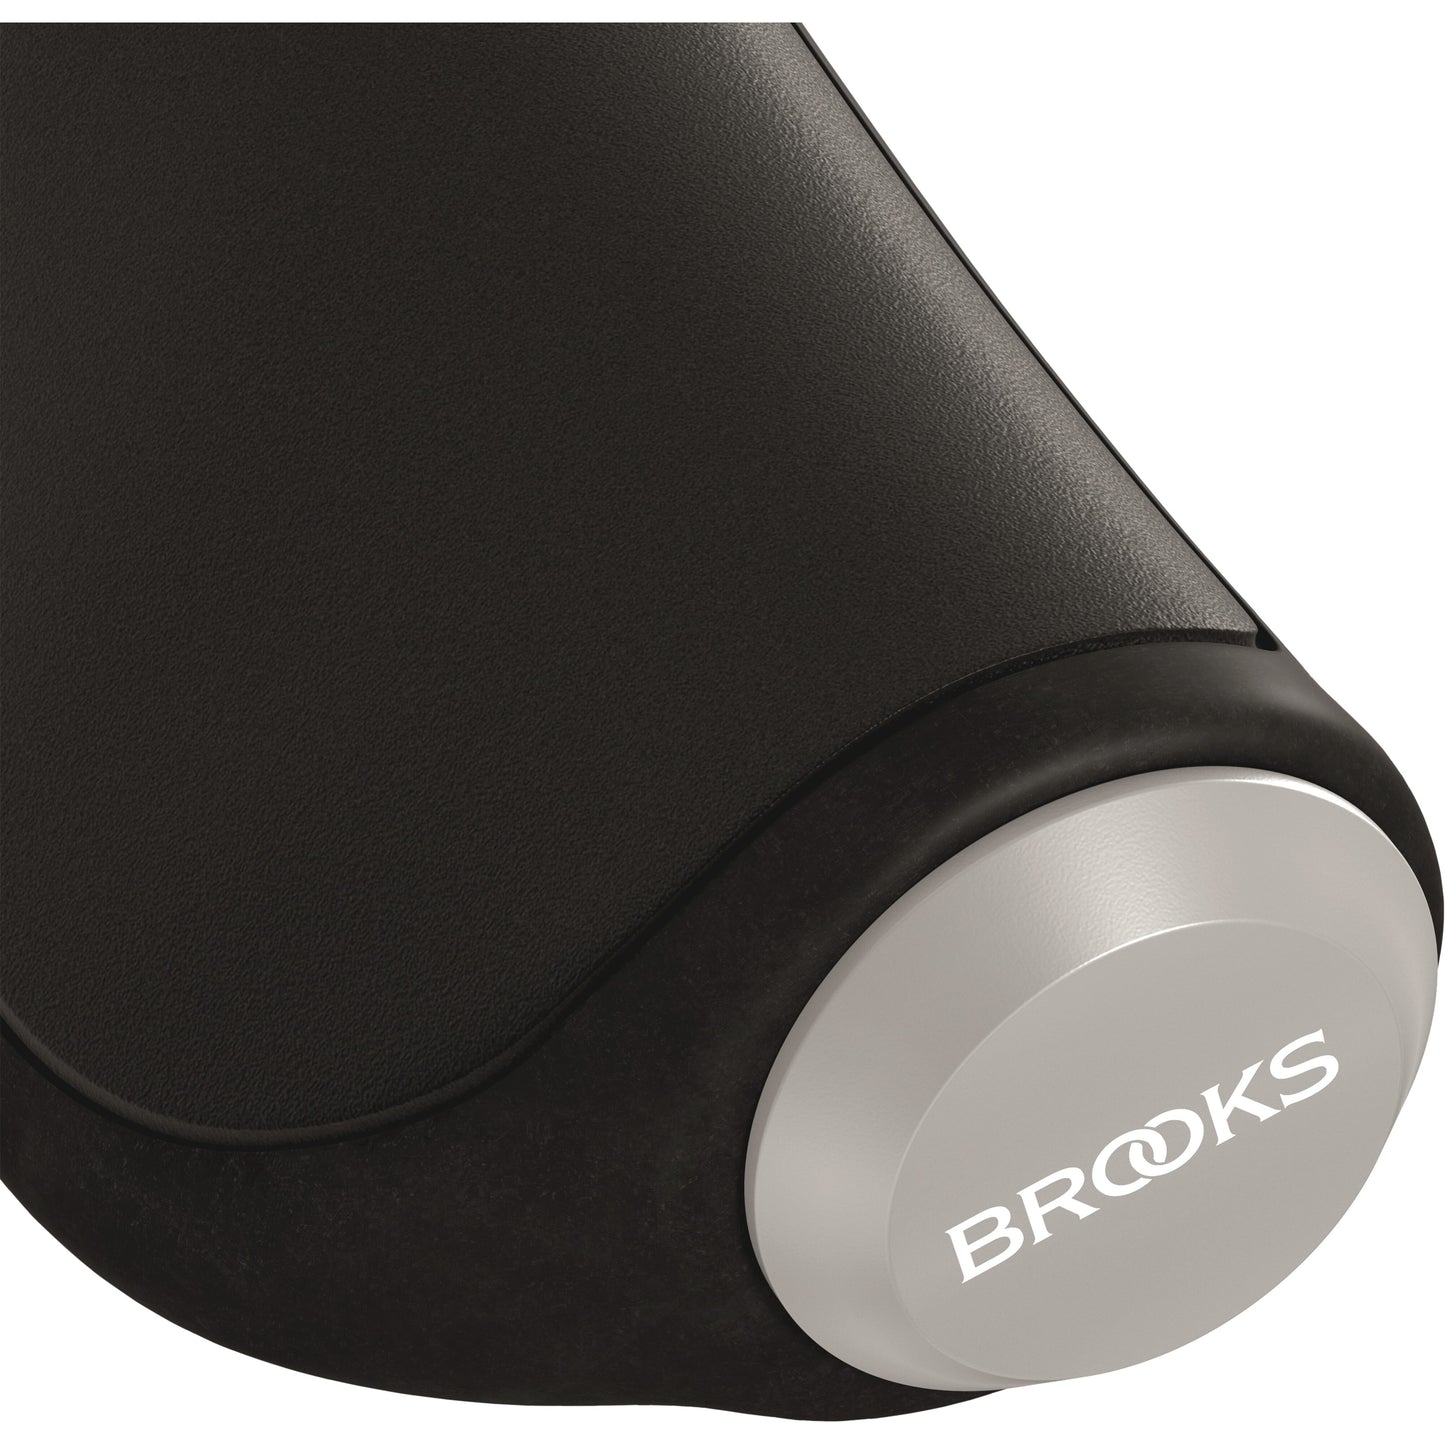 Brooks gestisce la presa in pelle ergonomica 130mm nero